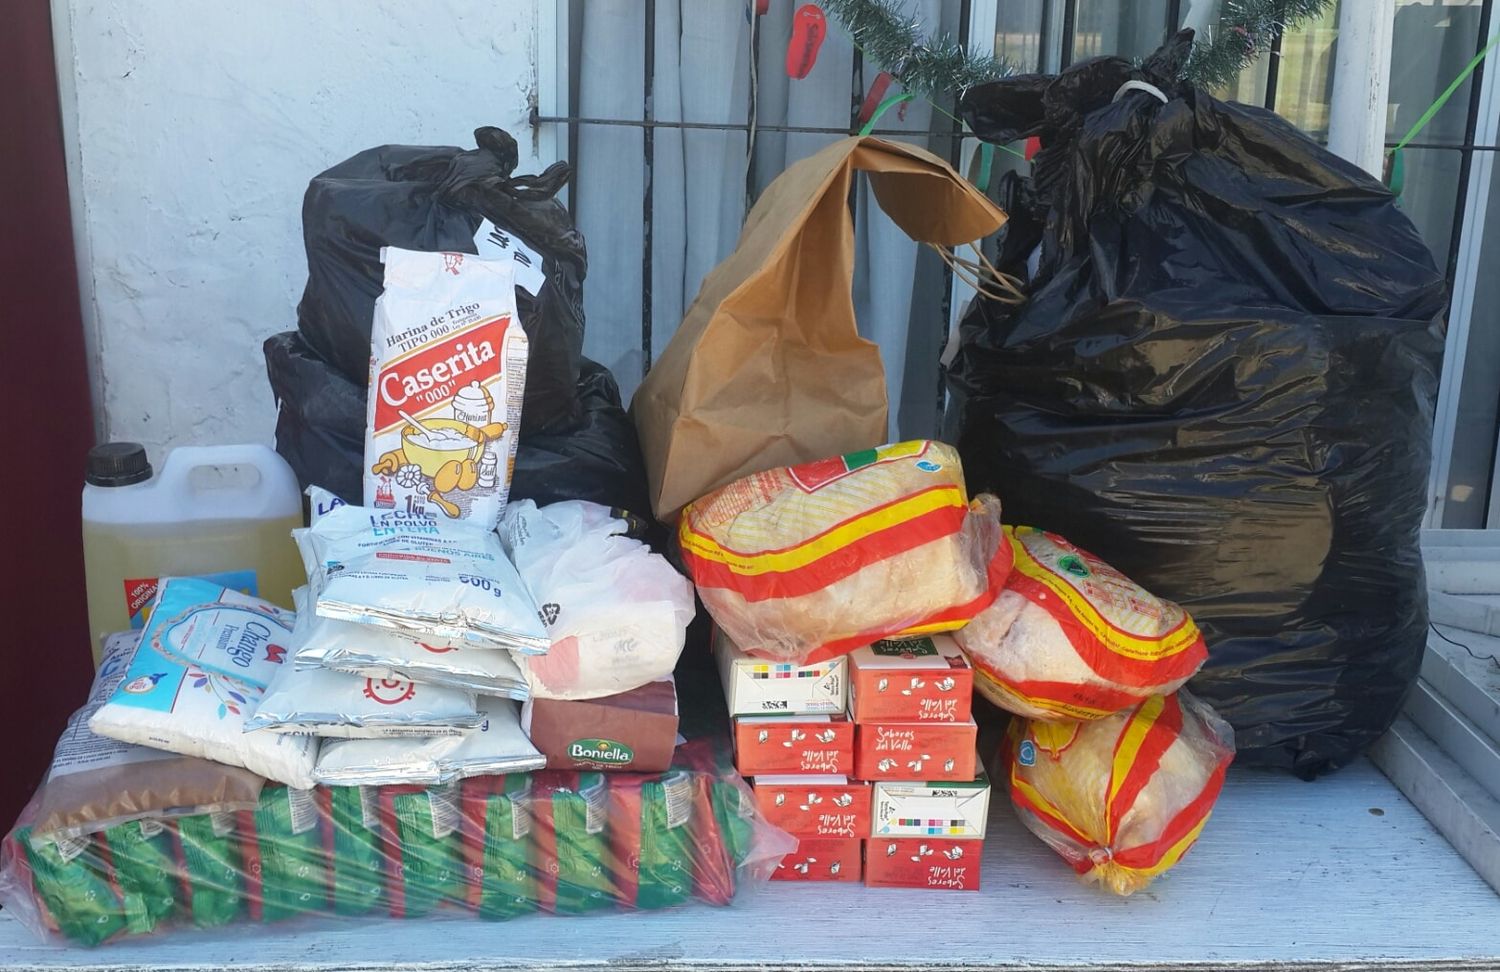  Un club de Merlo pide donaciones de juguetes y zapatillas para asistir a comedores en Reyes